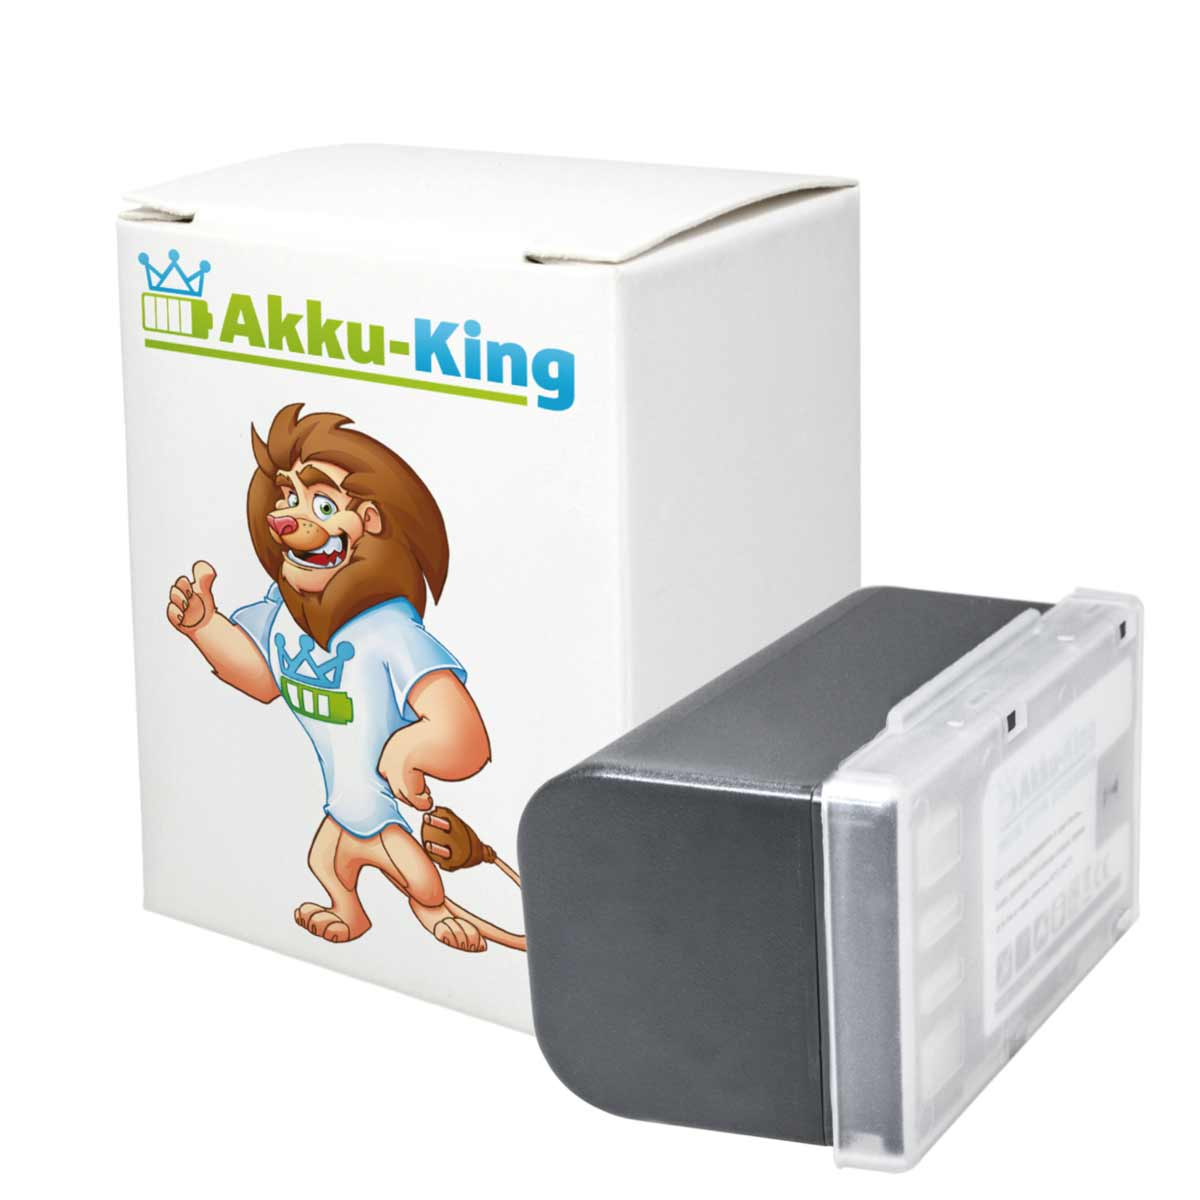 AKKU-KING Akku kompatibel mit JVC 1600mAh Volt, BN-VF815 Li-Ion 7.4 Kamera-Akku